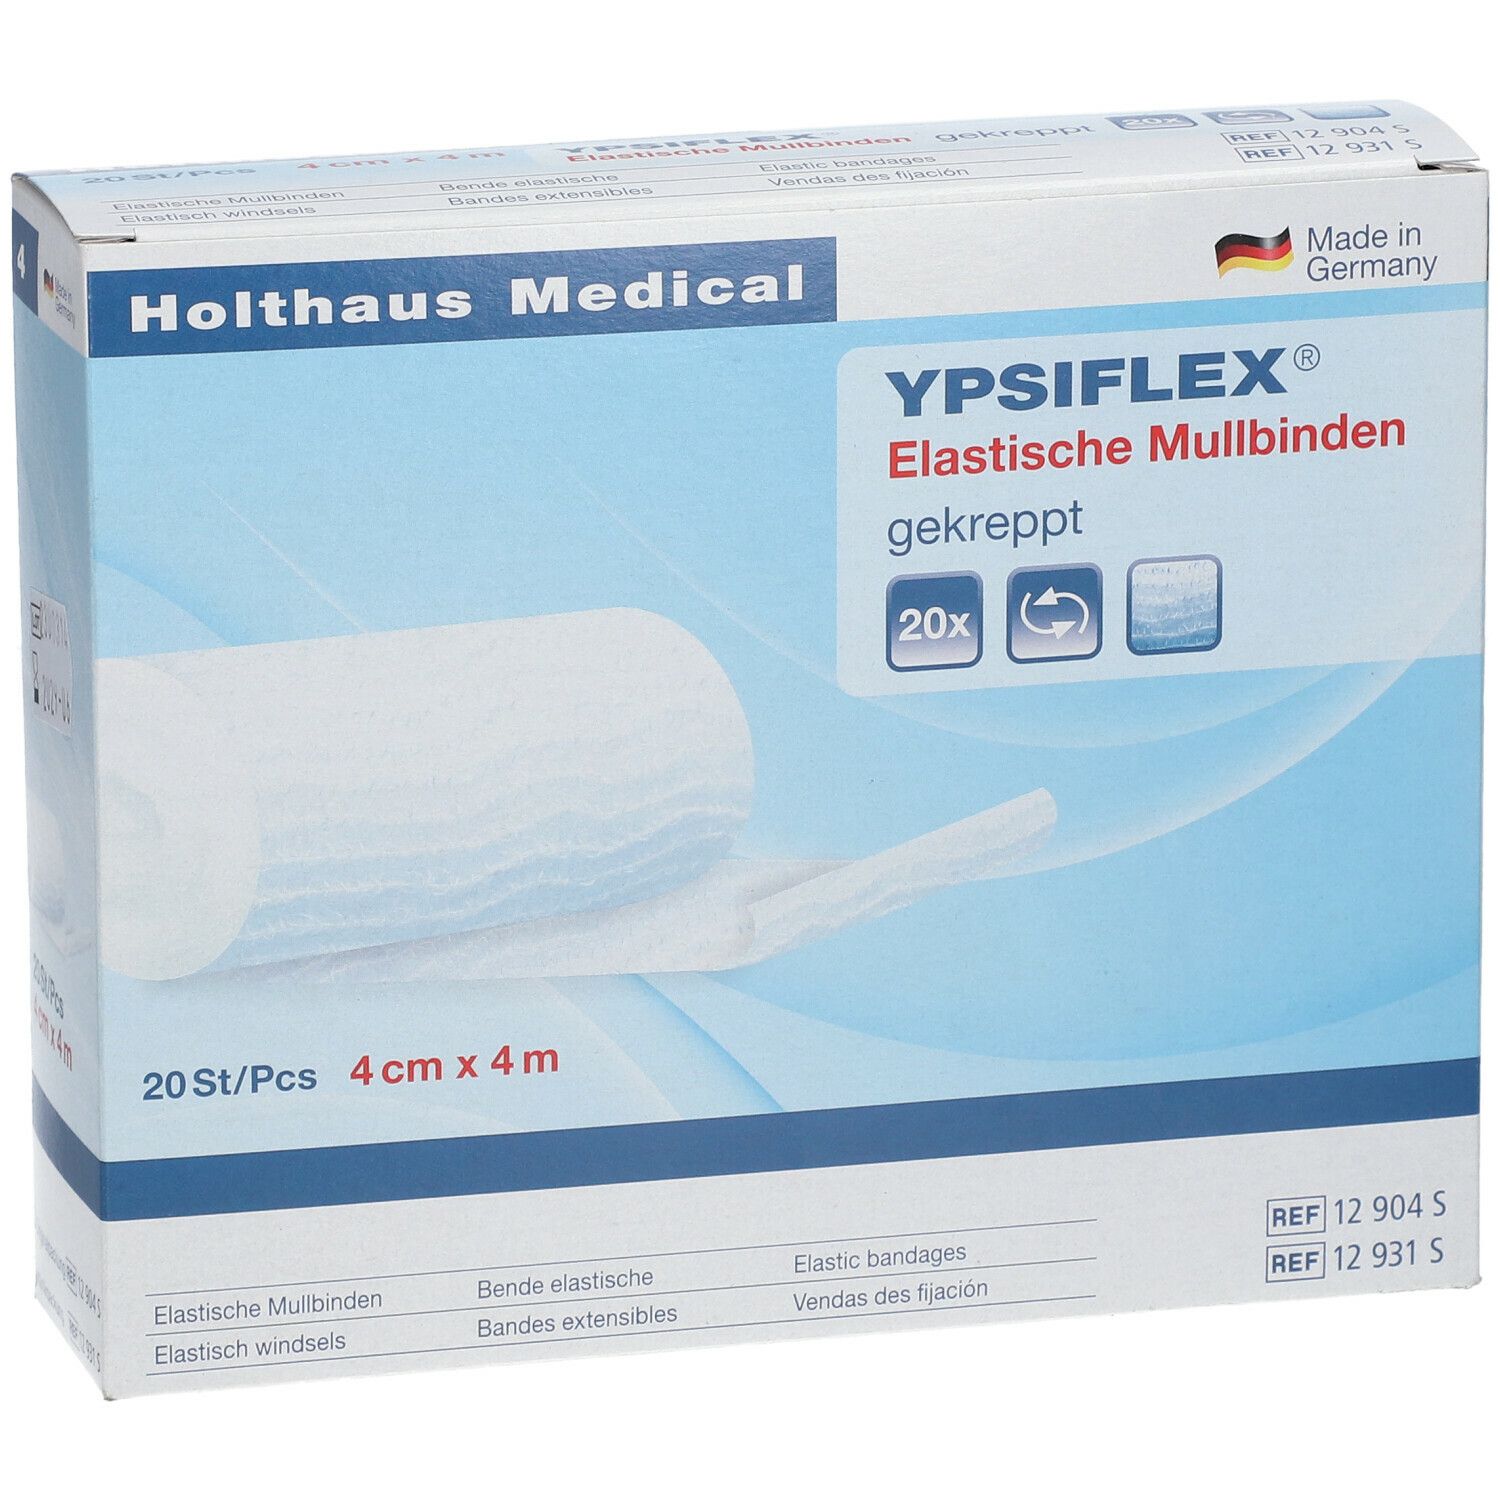 YPSIFLEX® Elastische Mullbinden 4 cm x 4 m